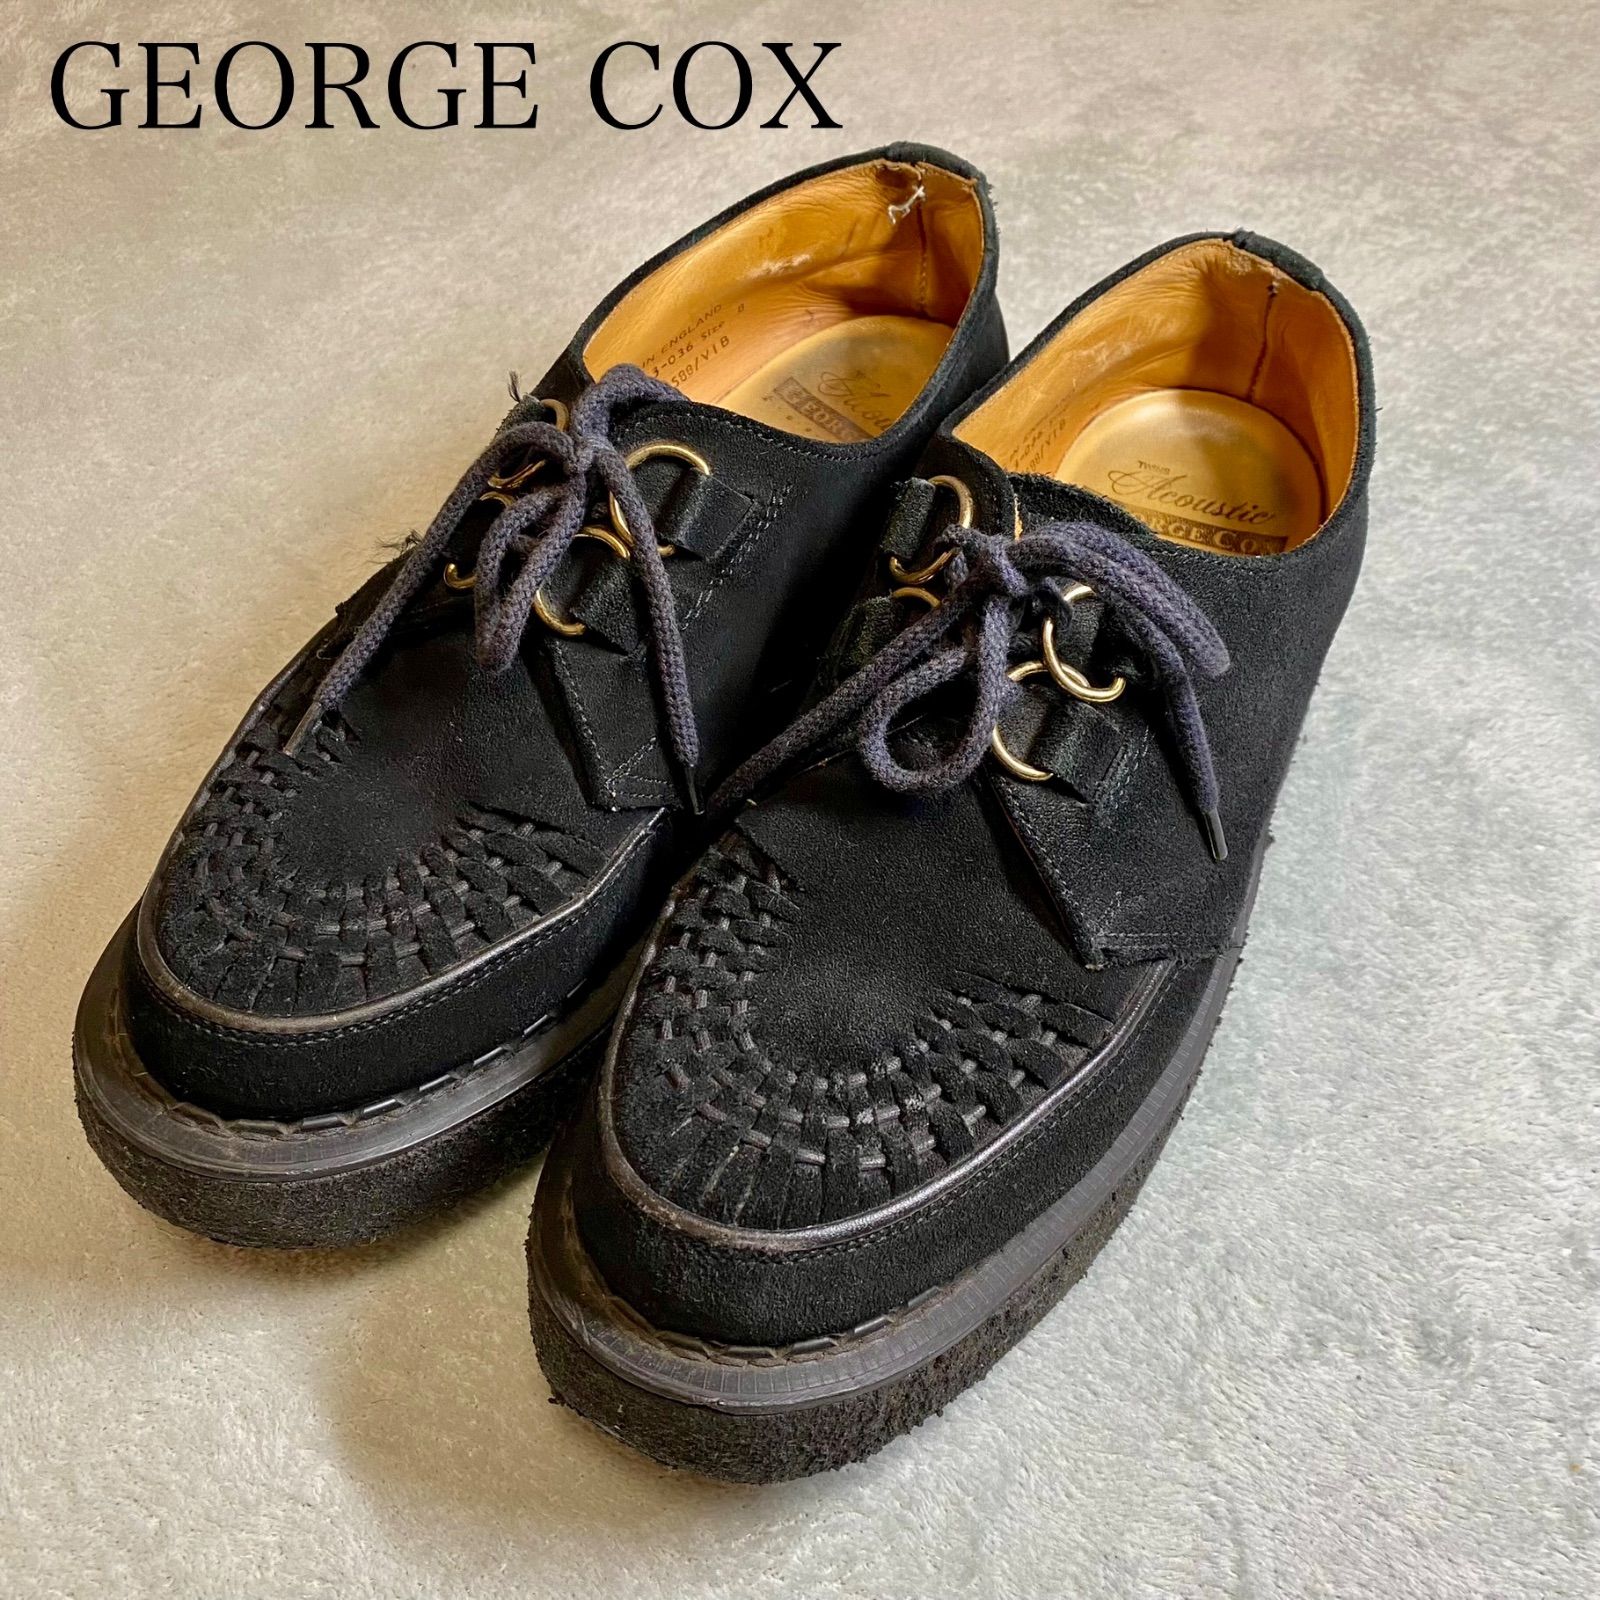 【GEORGE COX】ギブソン　ジョージコックス 革靴 / ラバーソール / 3588 / ENGLAND製 / BLK / UK /  26.5-27.0/スエードレザー